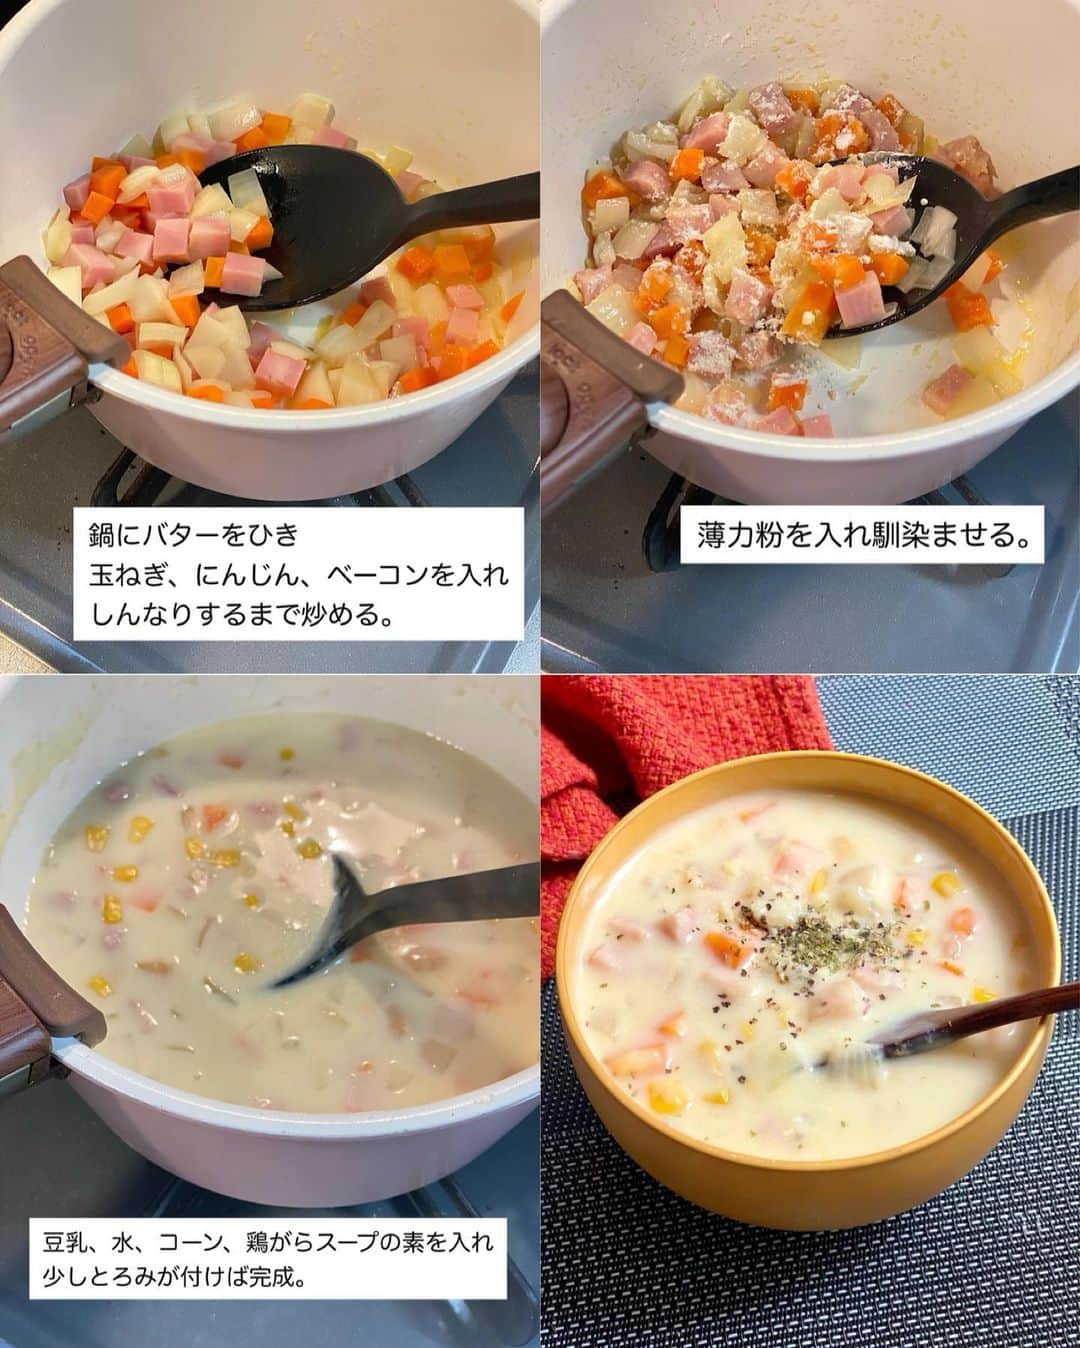 山本菜月さんのインスタグラム写真 - (山本菜月Instagram)「⁡ ⁡ ⁡ ⁡ ┈┈┈┈┈┈┈┈┈┈┈••✼ 缶詰で楽々♩ コーンレシピ4選 ┈┈┈┈┈┈┈┈┈┈┈••✼ ⁡ ⁡ こんにちは☀︎ なつ(@zubora_meshi_ )です。 ⁡ 今日は缶詰を使った 簡単コーンレシピまとめです🌽❤️ ⁡ スープからおかず、ごはんものと 簡単時短で作れる幅広い内容になっています✨ ⁡ ⁡ どれもこどもからおとなまで みんなが喜ぶ味付け♡ 良かったらお試しください♩ ⁡ ⁡ ⁡ ｡.ꕤ⌒⌒⌒⌒⌒⌒ꕤ⌒⌒⌒⌒⌒⌒ꕤ.｡ ⁡ ⁡ ⚫︎コーンミルクスープ ⁡ 【2人分】 玉ねぎ 1/2個 にんじん 1/2個 ベーコン 50g コーン 100g バター 10g 薄力粉 大さじ2 無調製豆乳(牛乳可) 250cc 水 150cc 鶏がらスープの素 小さじ1と1/2 ⁡ 【作り方】 ①鍋にバターをひき、 　玉ねぎ、にんじん、ベーコンを炒める。 ②①に薄力粉を入れ馴染ませる。 ③豆乳、水、コーン、鶏がらスープの素 　を入れ、とろみがついてきたら完成。 ⁡ 【メモ】 食材は全て1cm幅の正方形に切りました。 ⁡ ⁡ ＊＊＊ ⁡ ⁡ ⚫︎じゃがいものツナマヨチーズ焼き 【2人分】 じゃがいも 2〜3個 コーン 100g ツナ缶 1缶 塩 1〜2つまみ ピザ用チーズ 適量 ★ マヨネーズ 大さじ1と1/2 砂糖、めんつゆ(2倍濃縮) 各小さじ1/2 ⁡ 【作り方】 ①じゃがいもの皮を剥き、4等分にし 　耐熱容器に入れふわっとラップし 　レンジで600w4分加熱する。 ②ツナ缶とコーンの水をきり 　★と合わせておく。 ③①をお好みの大きさに潰し塩を振り 　耐熱皿に入れ、②、チーズを乗せ 　グリルやオーブントースターなどで 　チーズを溶かして完成。 ⁡ ⁡ ＊＊＊ ⁡ ⁡ ⚫︎コーンカレーそぼろ丼 【子供4人分】(大人2人分) 合い挽き肉 250g とうもろこし 1本分 (コーン缶1個でも◎その場合チンなし) サラダ油 小さじ1 塩胡椒 少々 酒 大さじ1 ⚫︎カレー粉 小さじ1と1/2 ⚫︎めんつゆ(2倍濃縮) 大さじ2 ⚫︎砂糖 大さじ1 ⚫︎塩胡椒 少々 ⁡ 温玉・粉チーズ・マヨネーズ等はお好み (写真は小葱) ⁡ ⁡ 【作り方】 ①とうもろこしの皮を1枚残した状態で 　ラップにくるみ、レンジ600w2分加熱。 　包丁で身を削ぐ。 ②フライパンにサラダ油をひき 　ひき肉、酒、塩胡椒を入れて 　ひき肉がパラパラになるまで炒める。 ③①と⚫︎を入れ馴染むまで炒める。 ④ごはんに乗せて、お好みで温玉などを 　トッピングしたら完成。 ⁡ ⁡ 【メモ】 鶏ひき肉でも代用できます。 コーン缶でも代用できますが、手間かかりませんので旬のとうもろこしで是非☺️💗 ⁡ ⁡ ＊＊＊ ⁡ ⁡ ⚫︎コーンバター醤油飯 【2合分】 お米 2合 コーン缶 1缶(内容量120g程度) コンソメキューブ　1個 (もしくは顆粒コンソメ 小さじ2程度) 醤油 大さじ2 バター 10〜20g 粗挽き胡椒 適宜 ⁡ 【作り方】 ①お米を研いで炊飯釜に入れる。 ②コーン缶汁ごと、しょうゆ、コンソメを入れ 　2合のメモリまで水を加えたら 　軽く混ぜて普通炊飯する。 ③炊き上がったらバターを入れ 　しゃもじで切るように混ぜる。 　お好みで粗挽き胡椒をふる。 ⁡ 【メモ】 コンソメキューブを使用する場合 炊き上がりに固まっていますが混ぜれば◎ やわらかめのお米が好きな方は お水を2合のメモリより気持ち多めに入れる。 ⁡ ⁡ ⁡ ｡.ꕤ⌒⌒⌒⌒⌒⌒ꕤ⌒⌒⌒⌒⌒⌒ꕤ.｡ ⁡ ⁡ 最後までご覧頂きありがとうございます。 是非、食レポを聞かせてくださると嬉しいです♡ ⁡ ＊NATSU KITCHEN ＊」4月24日 11時37分 - zubora_meshi_